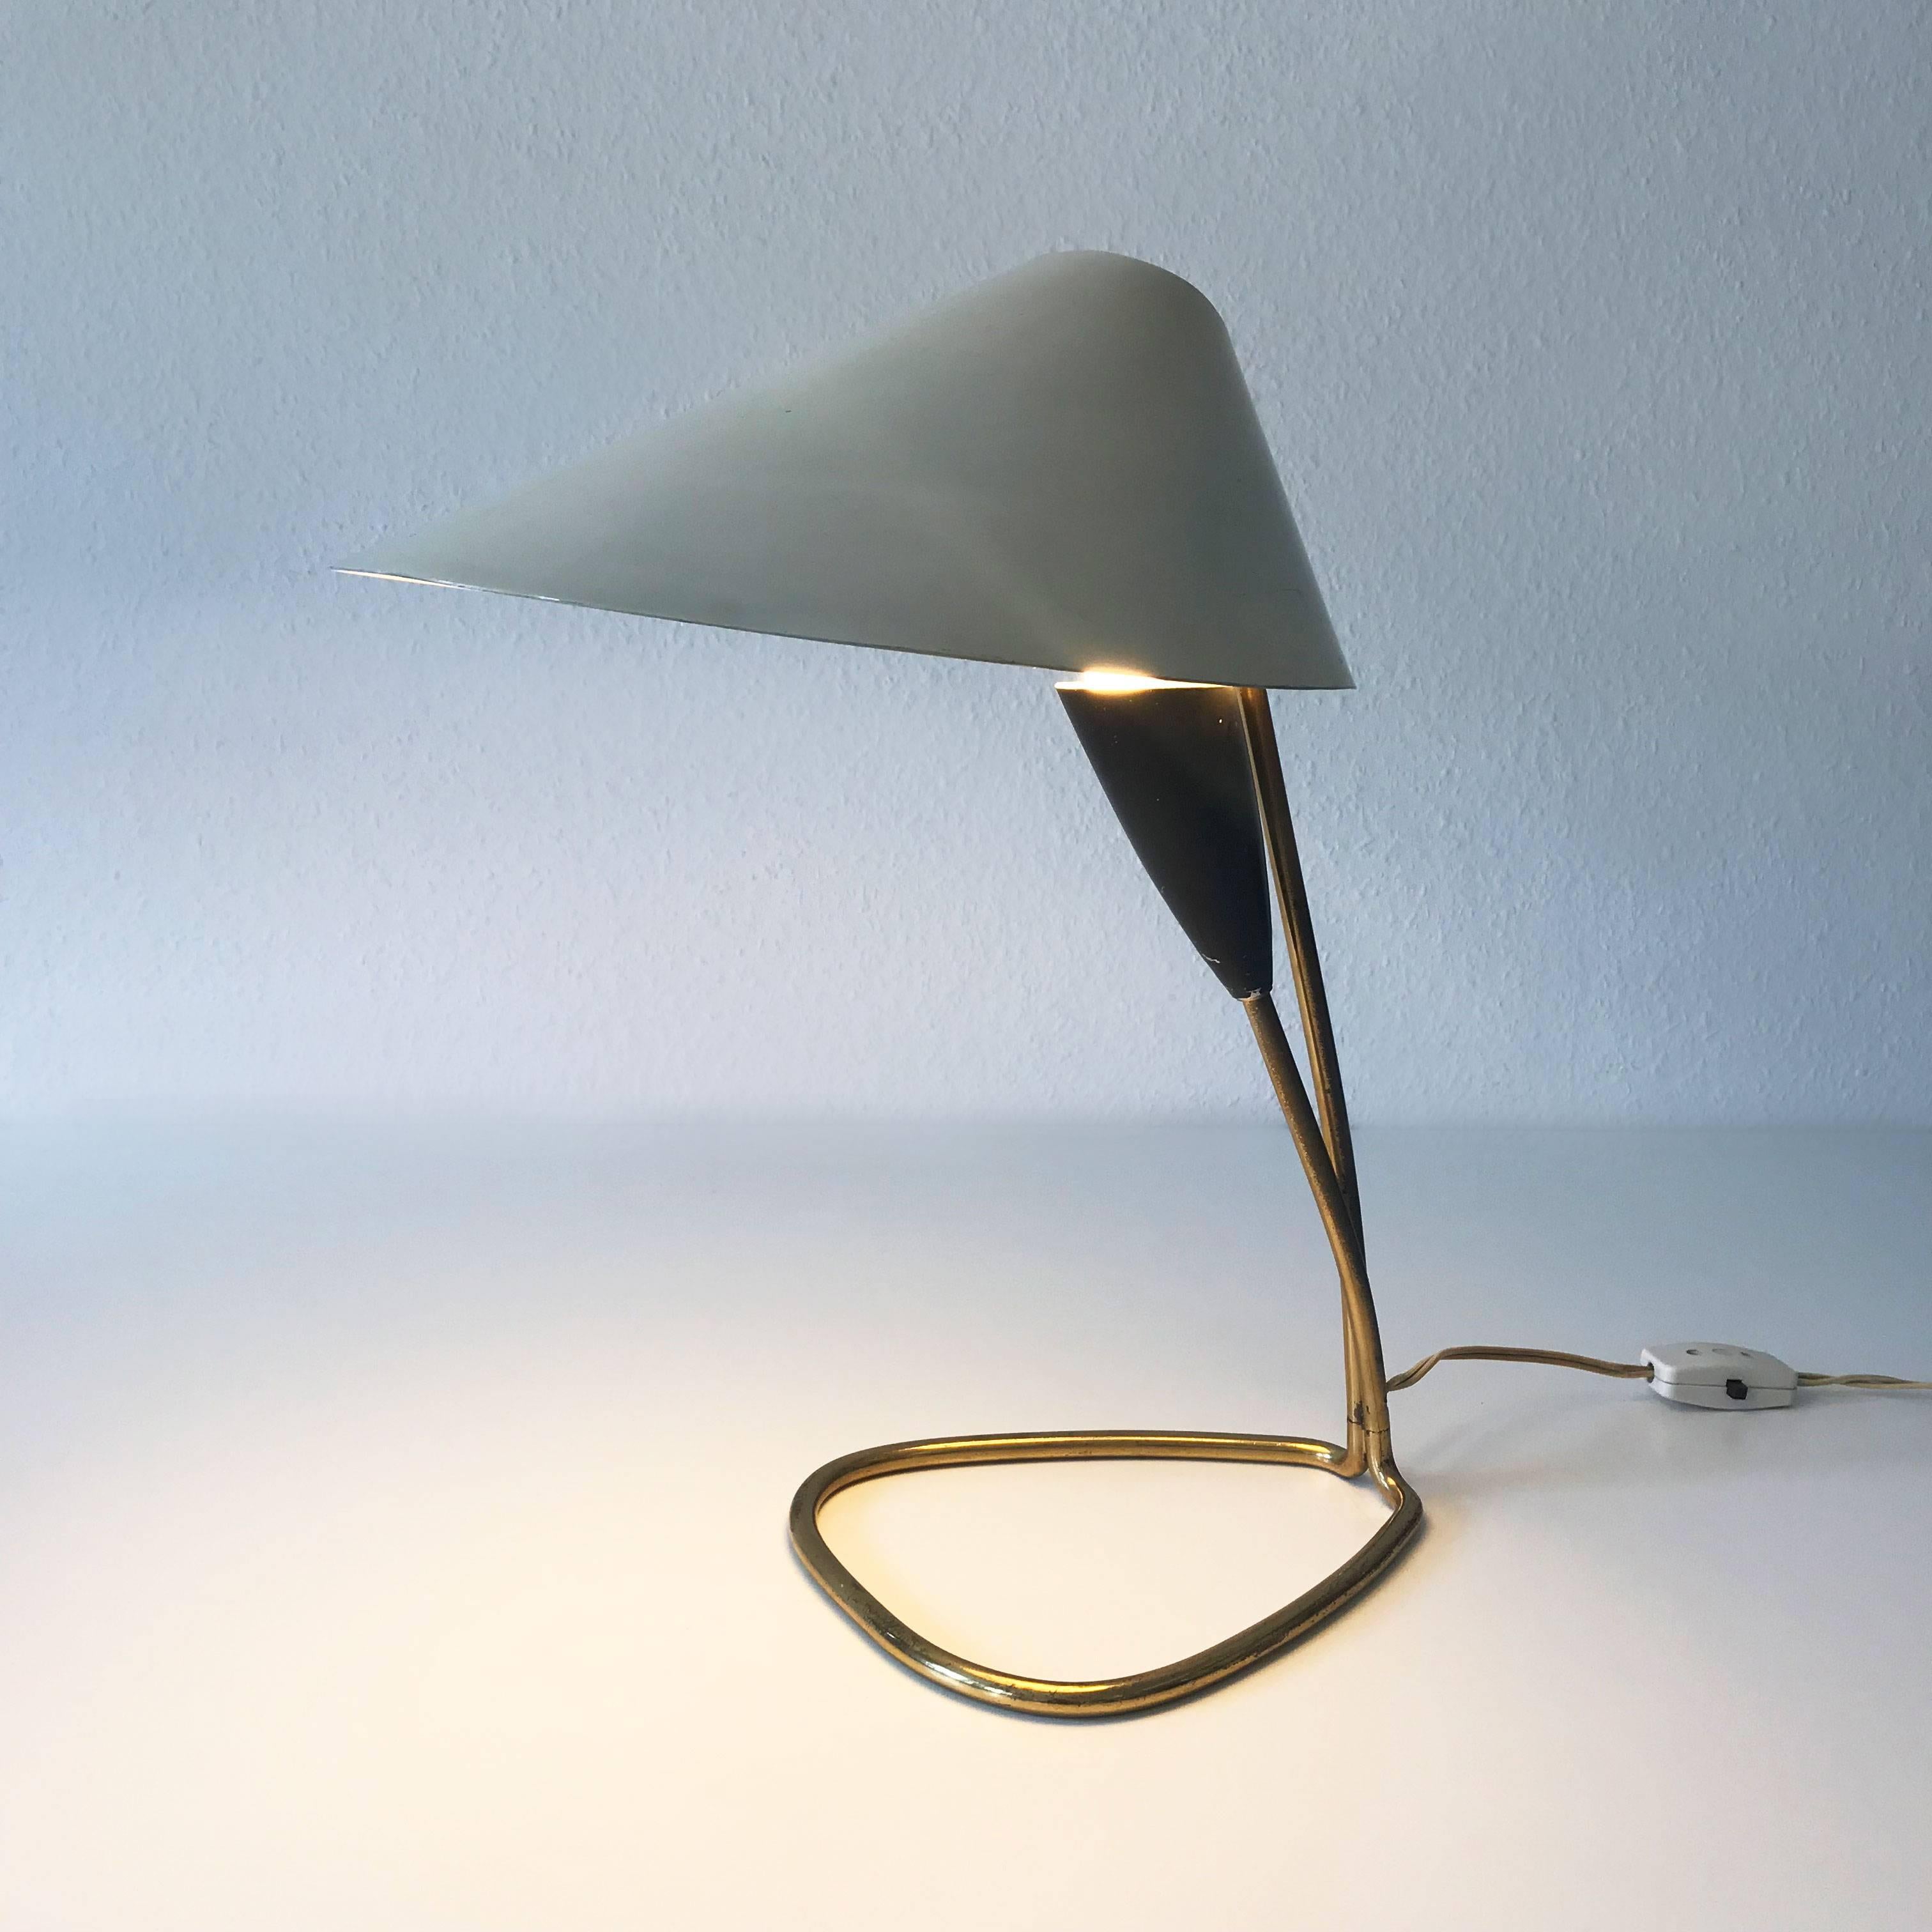 Italian Elegant Mid-Century Modern Table Lamp or Desk Light Italy 1950s